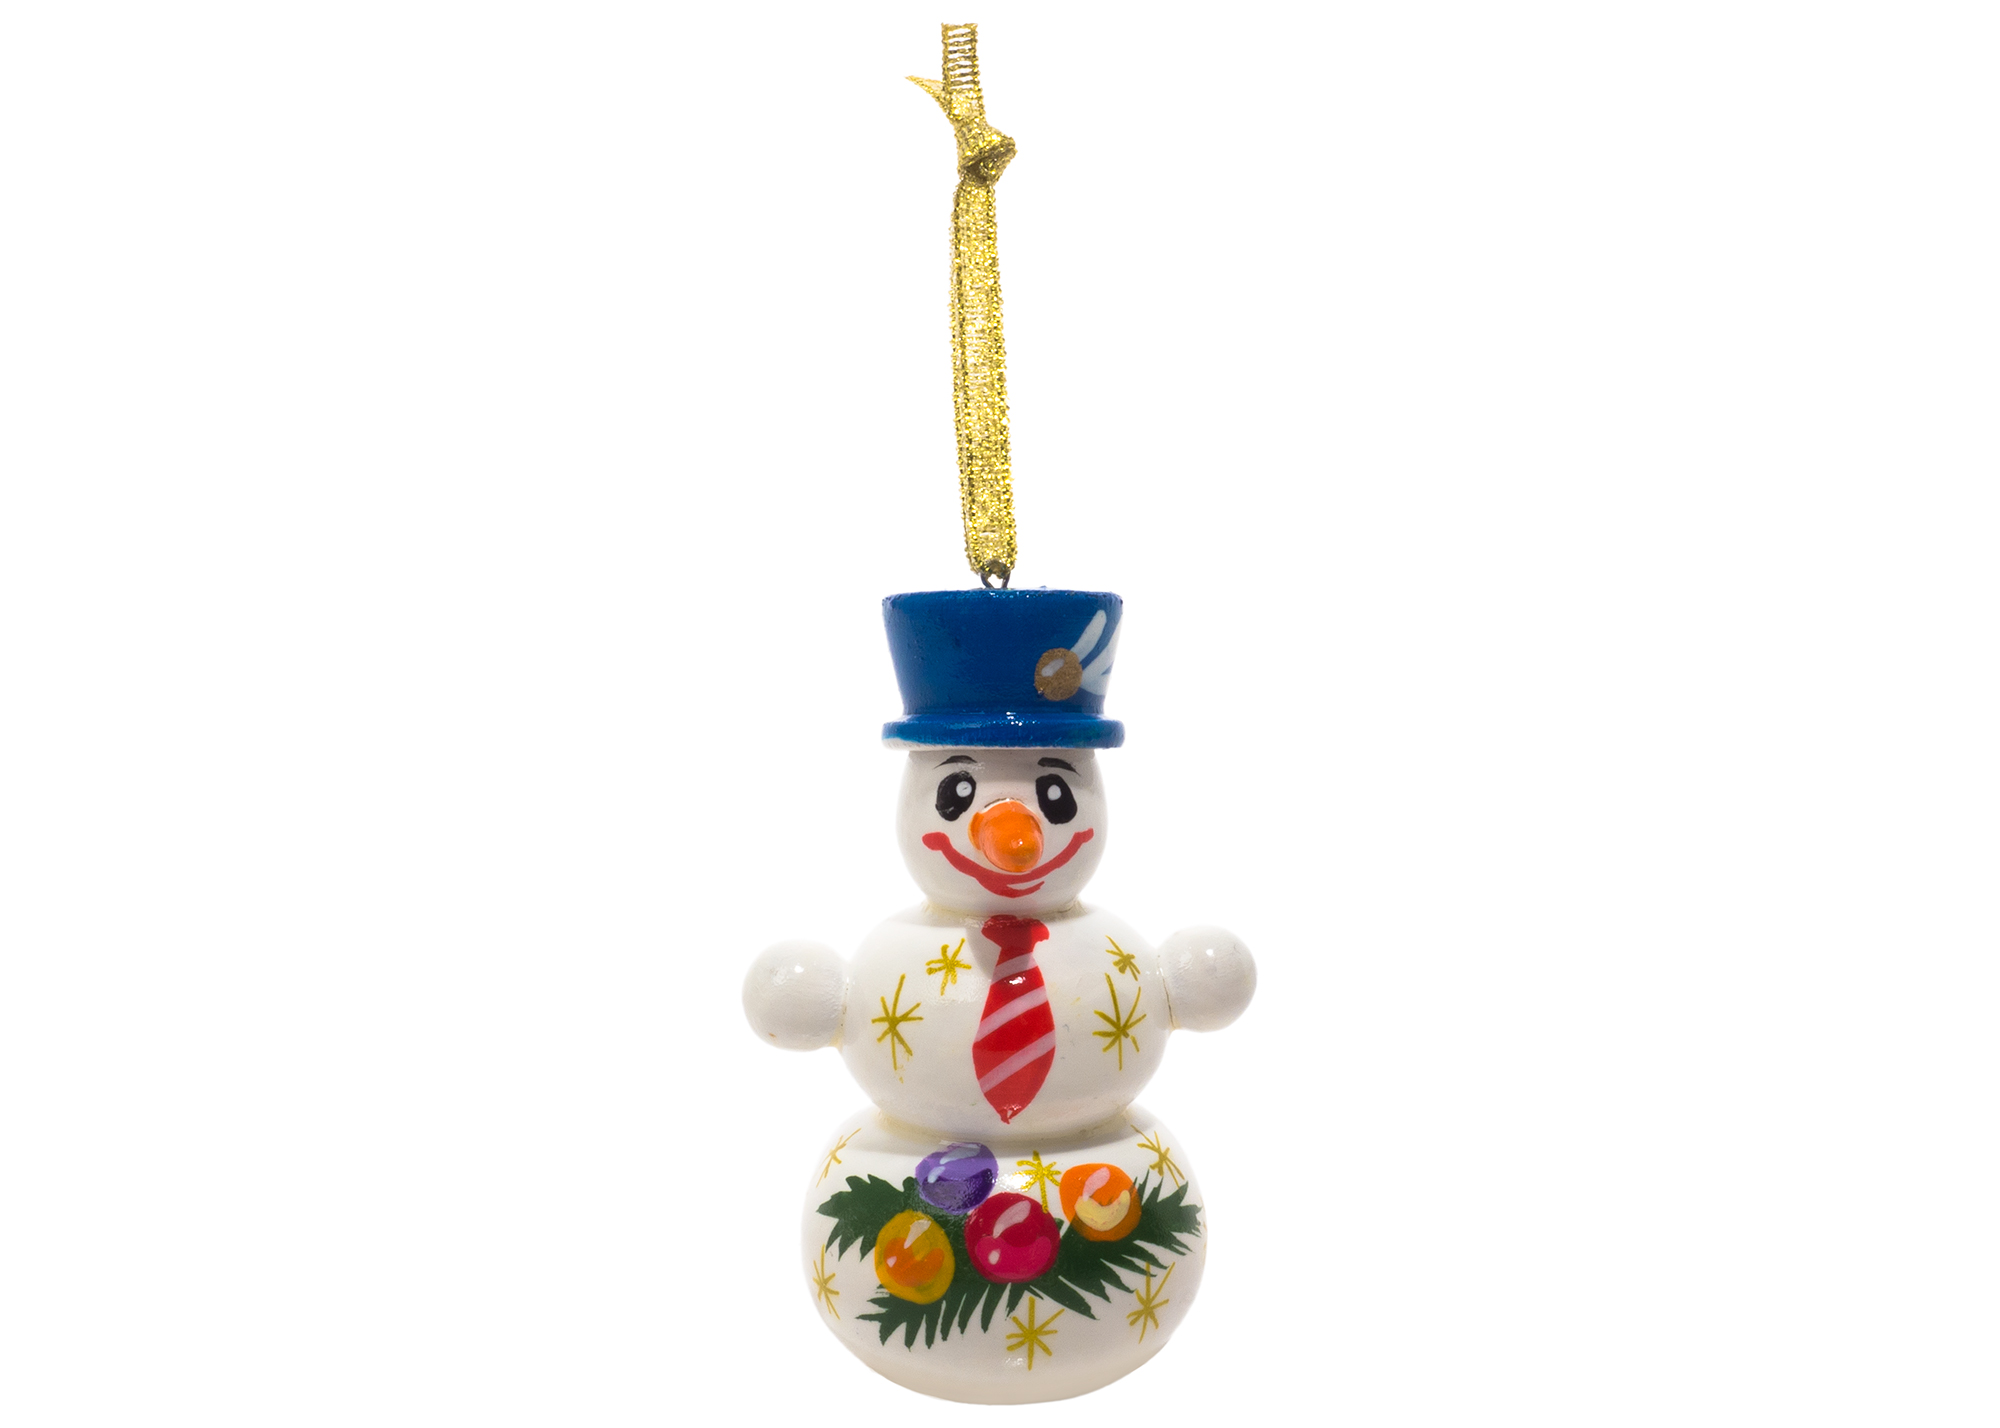 Buy Елочное украшение "Снеговик в шляпе" 7,5 см at GoldenCockerel.com